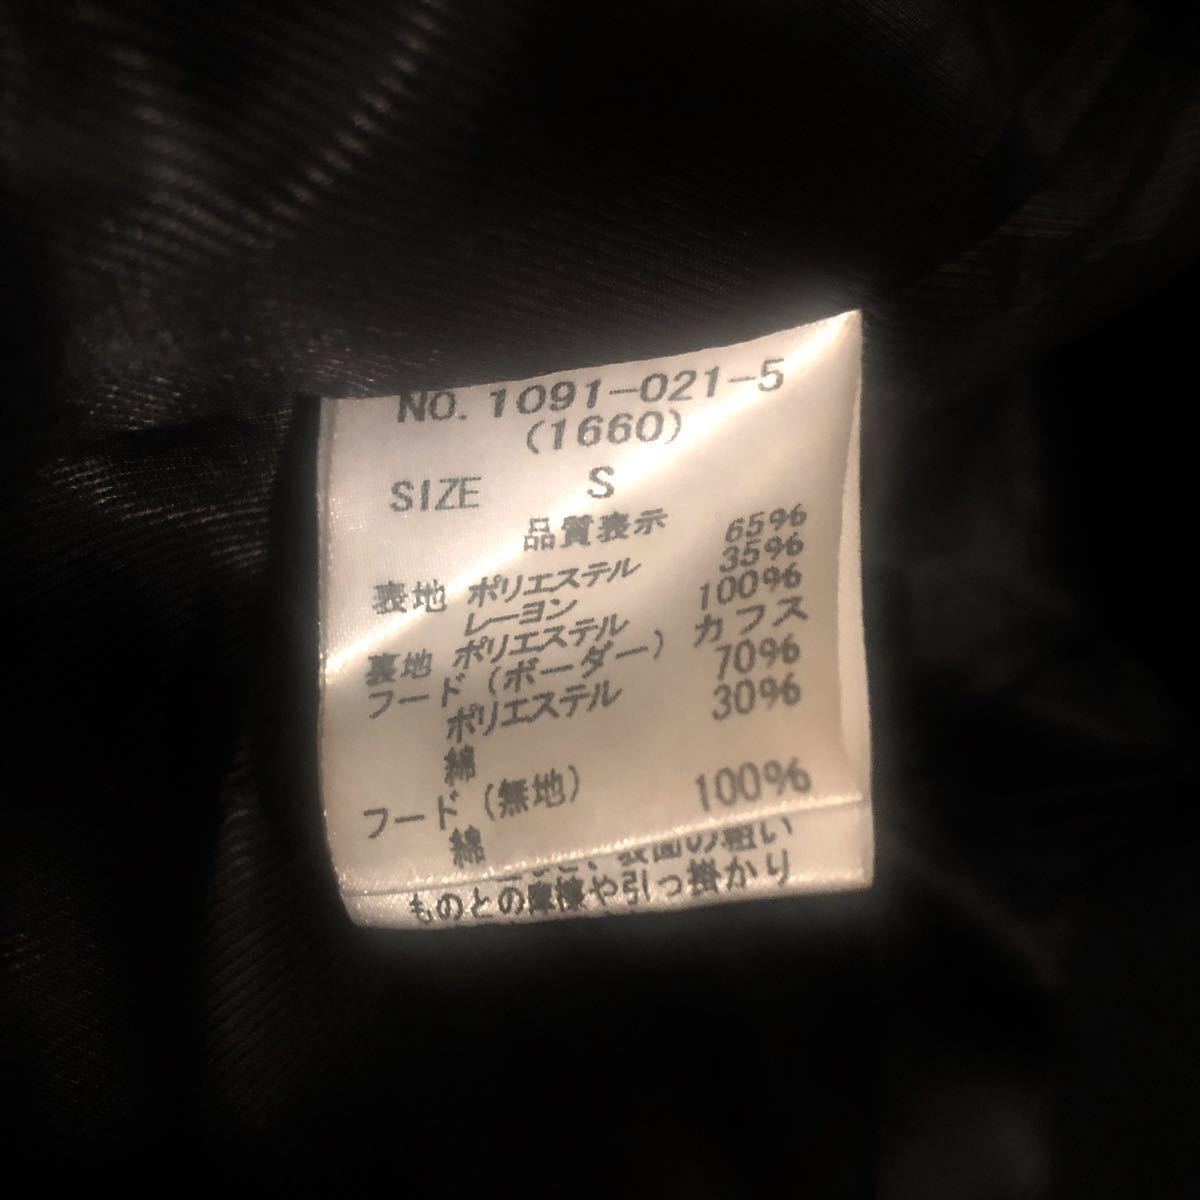 【最終価格】未使用品 SPIRAL GIRL 2way ボーダー パーカージャケット一体型 レアデザイン  黒白 ピンバッジ